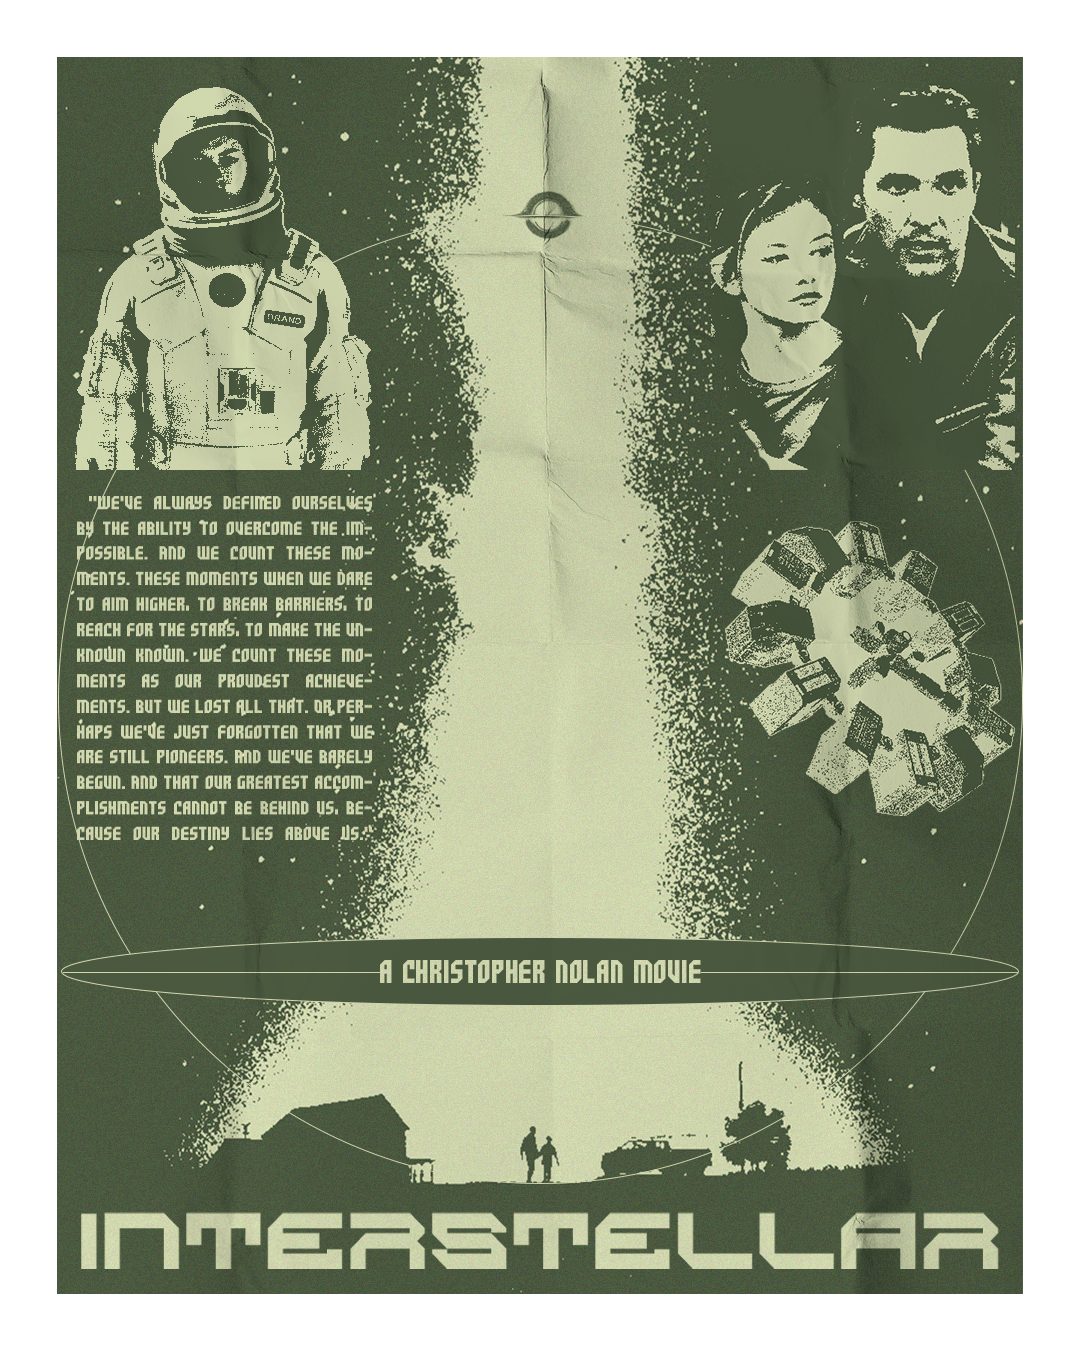 Christopher Nolan Movie Poster Design Interstellar